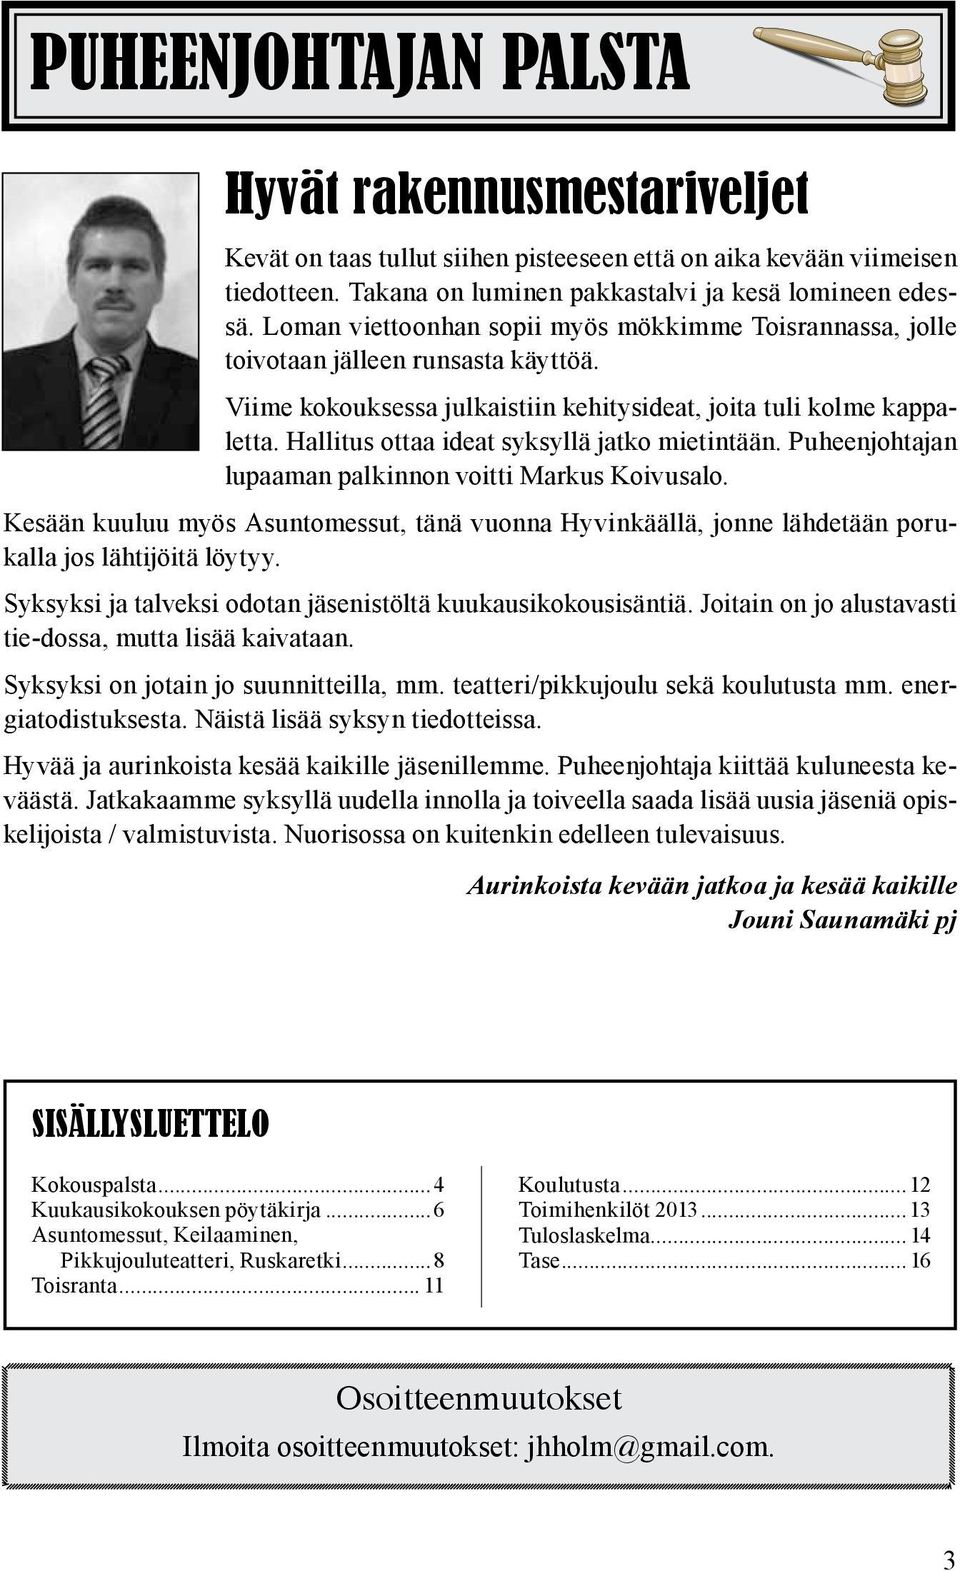 Hallitus ottaa ideat syksyllä jatko mietintään. Puheenjohtajan lupaaman palkinnon voitti Markus Koivusalo.